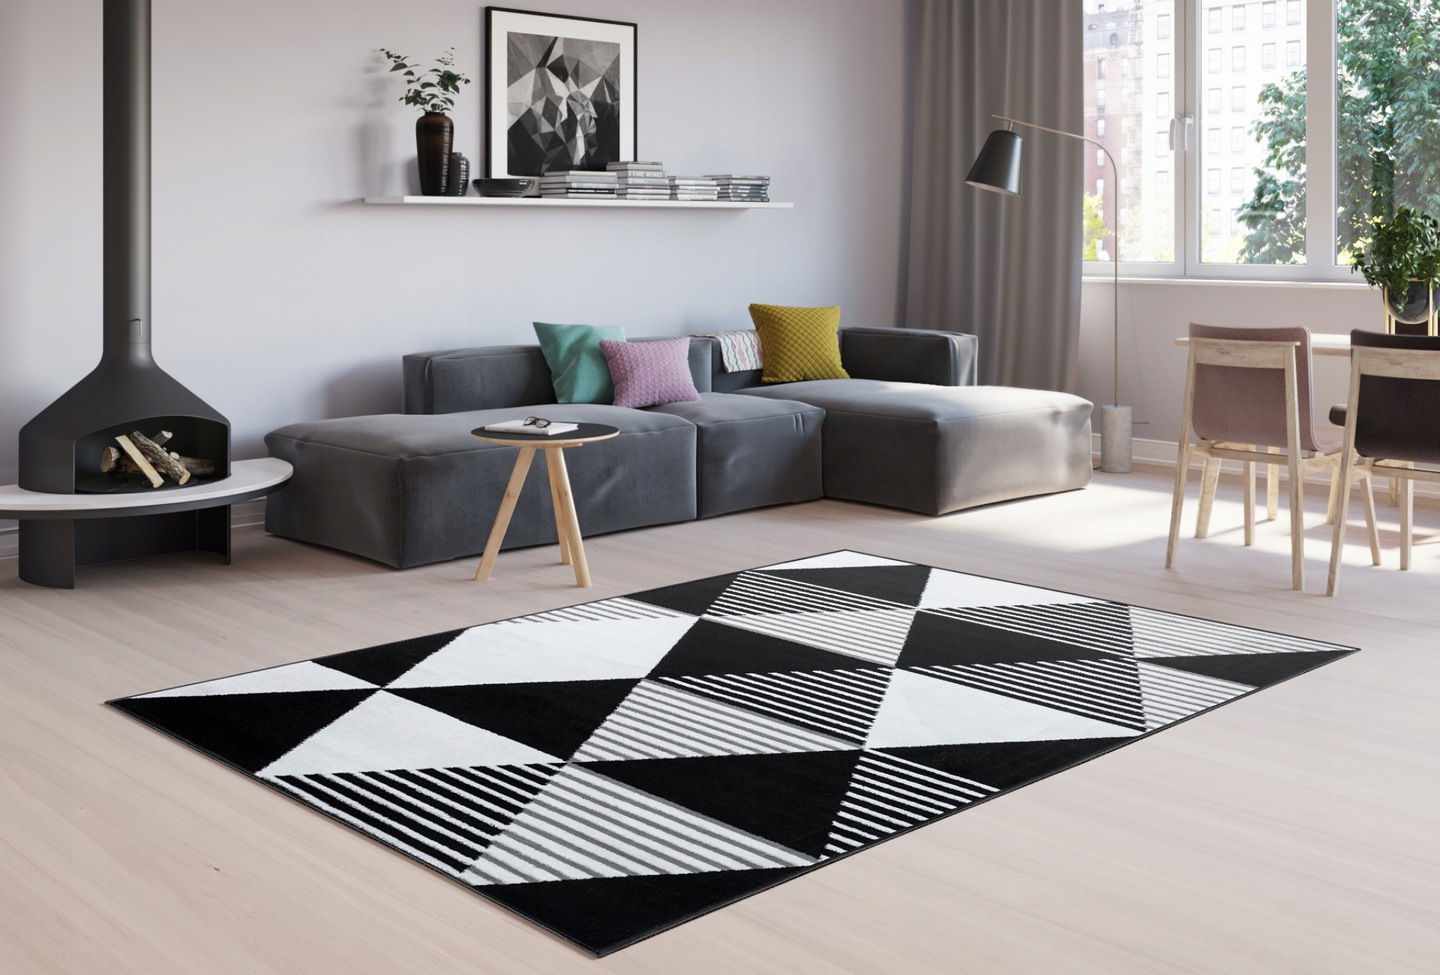 Moderný koberec HOME art veľké trojuholníky